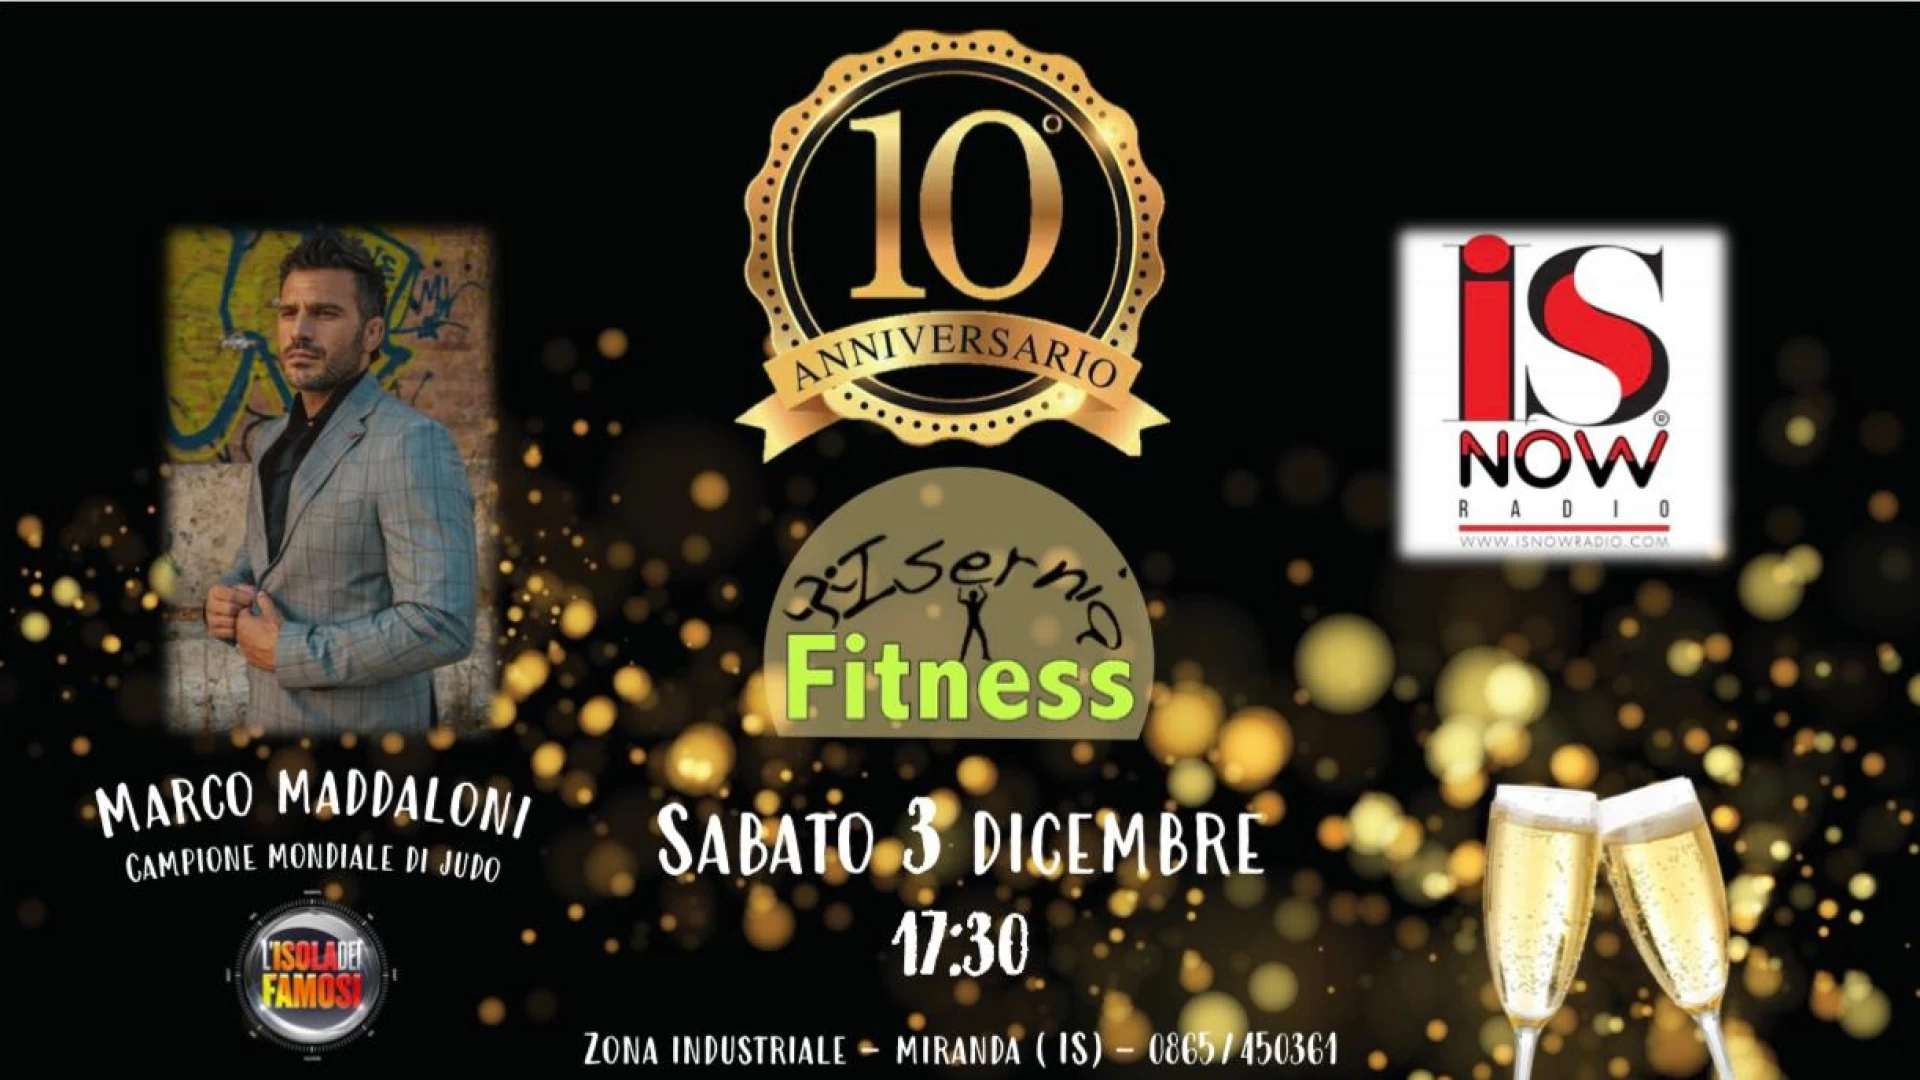 Isernia Fitness festeggia dieci anni di attività. La palestra di Mirco Calabrese organizza un evento con brindisi per sabato 3 dicembre. Ospite d’onore il campione di judo Marco Maddaloni.